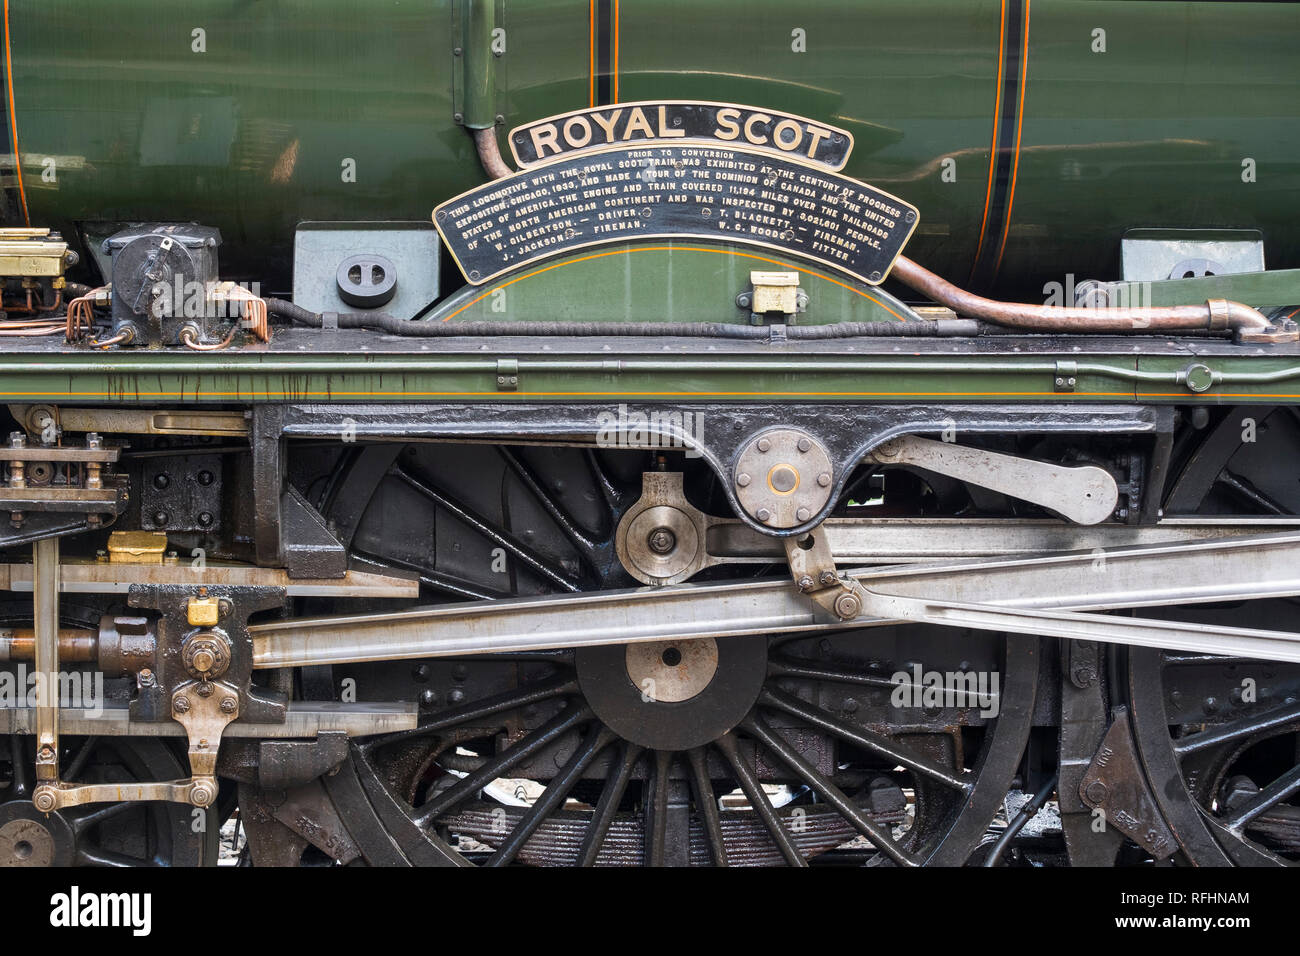 Roues et bielles du Royal Scot photographié à la locomotive sur l'accueil des visiteurs de Highley station Severn Valley Railway, Shropshire, England, UK Banque D'Images